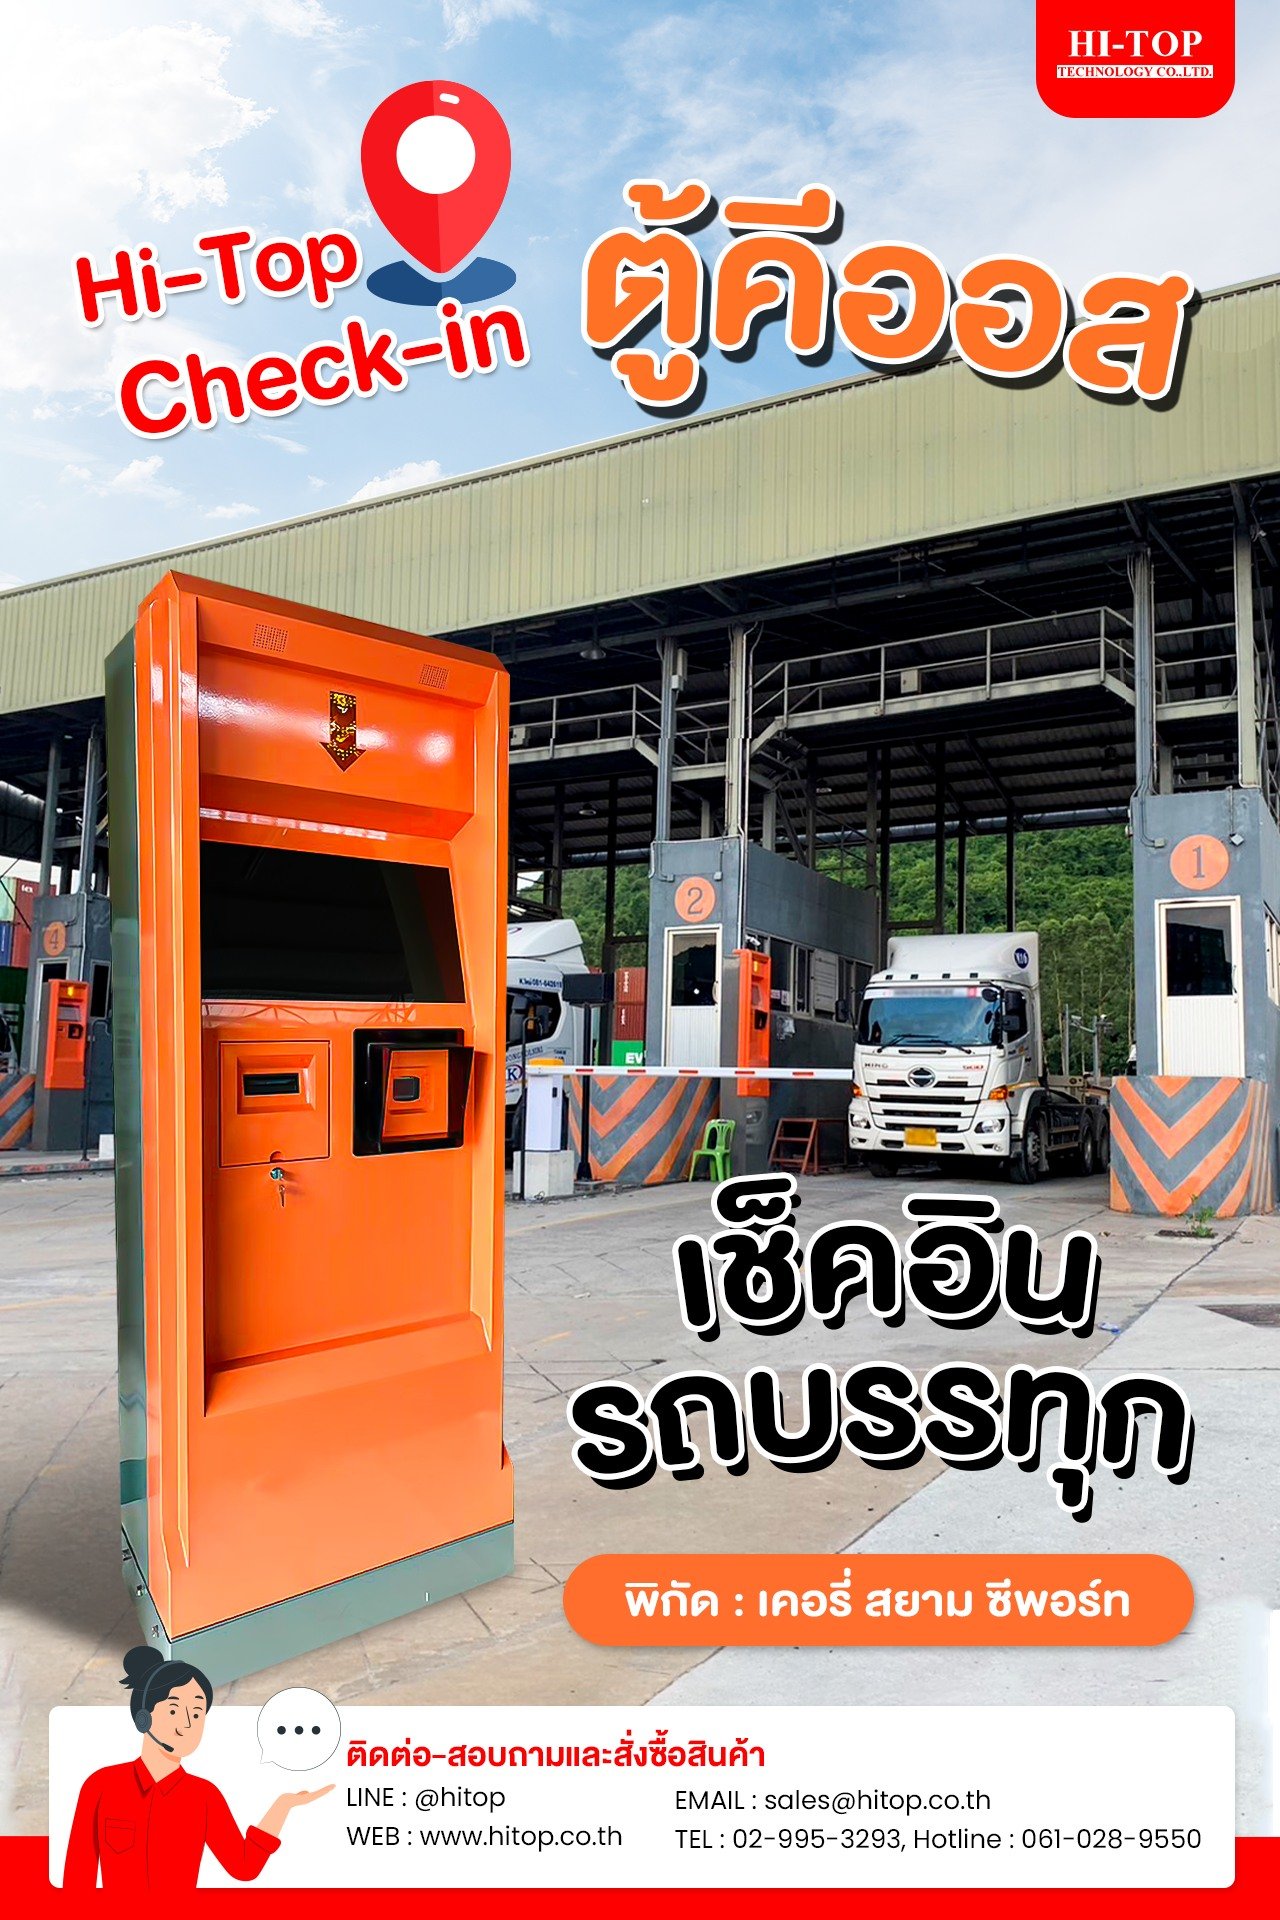 Hi-Top Check-in ตู้คีออสเช็คอินสำหรับรถบรรทุก พิกัดตู้: เคอรี่ สยาม ซีพอร์ท